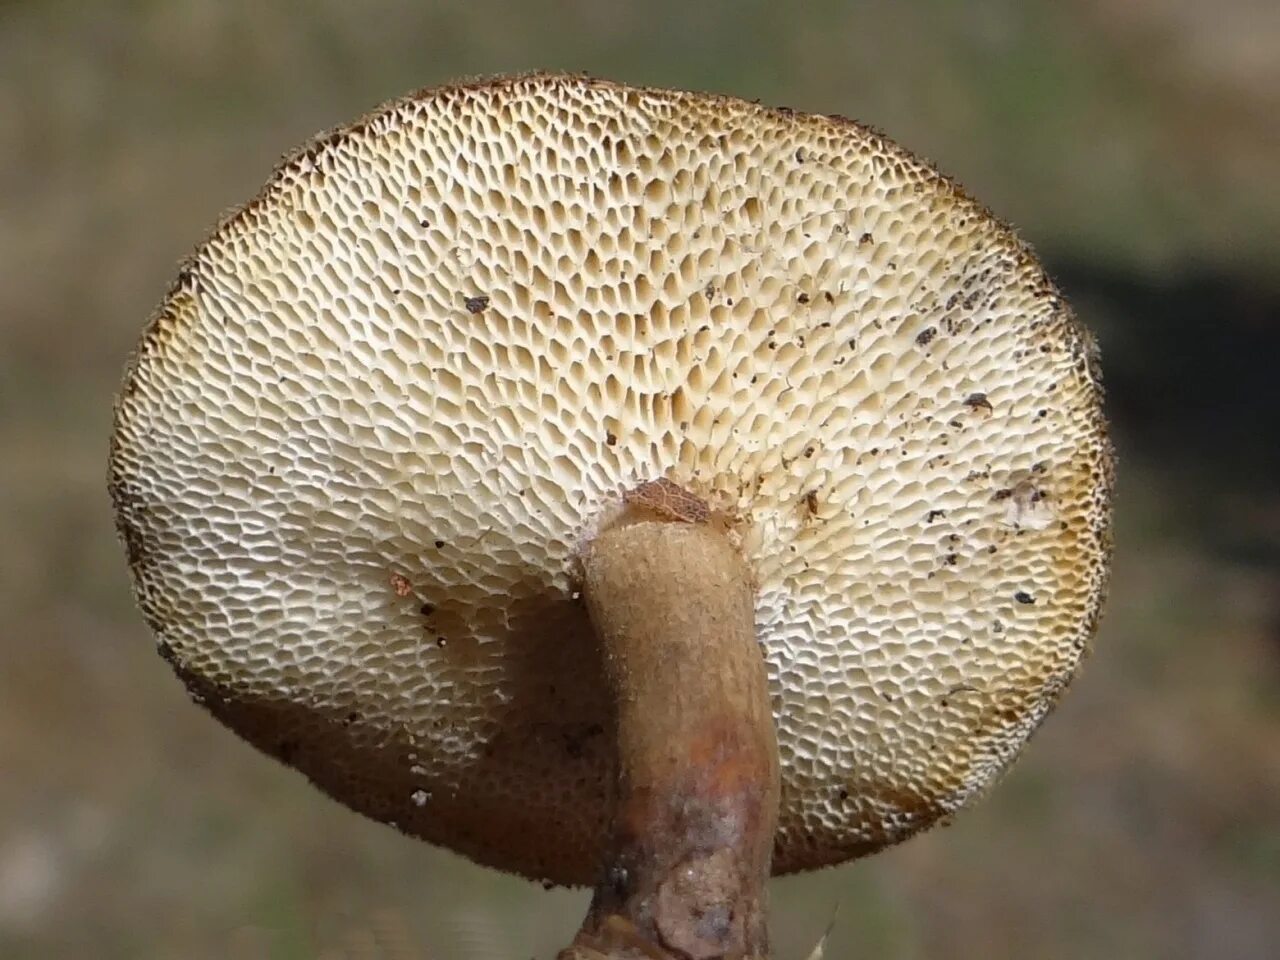 Пластинчатая шляпка. Polyporus tuberaster Полипорус клубненосный. Трутовик гриб клубненосный. Трутовик клубненосный Polyporus tuberaster. Polyporus rutinalis.